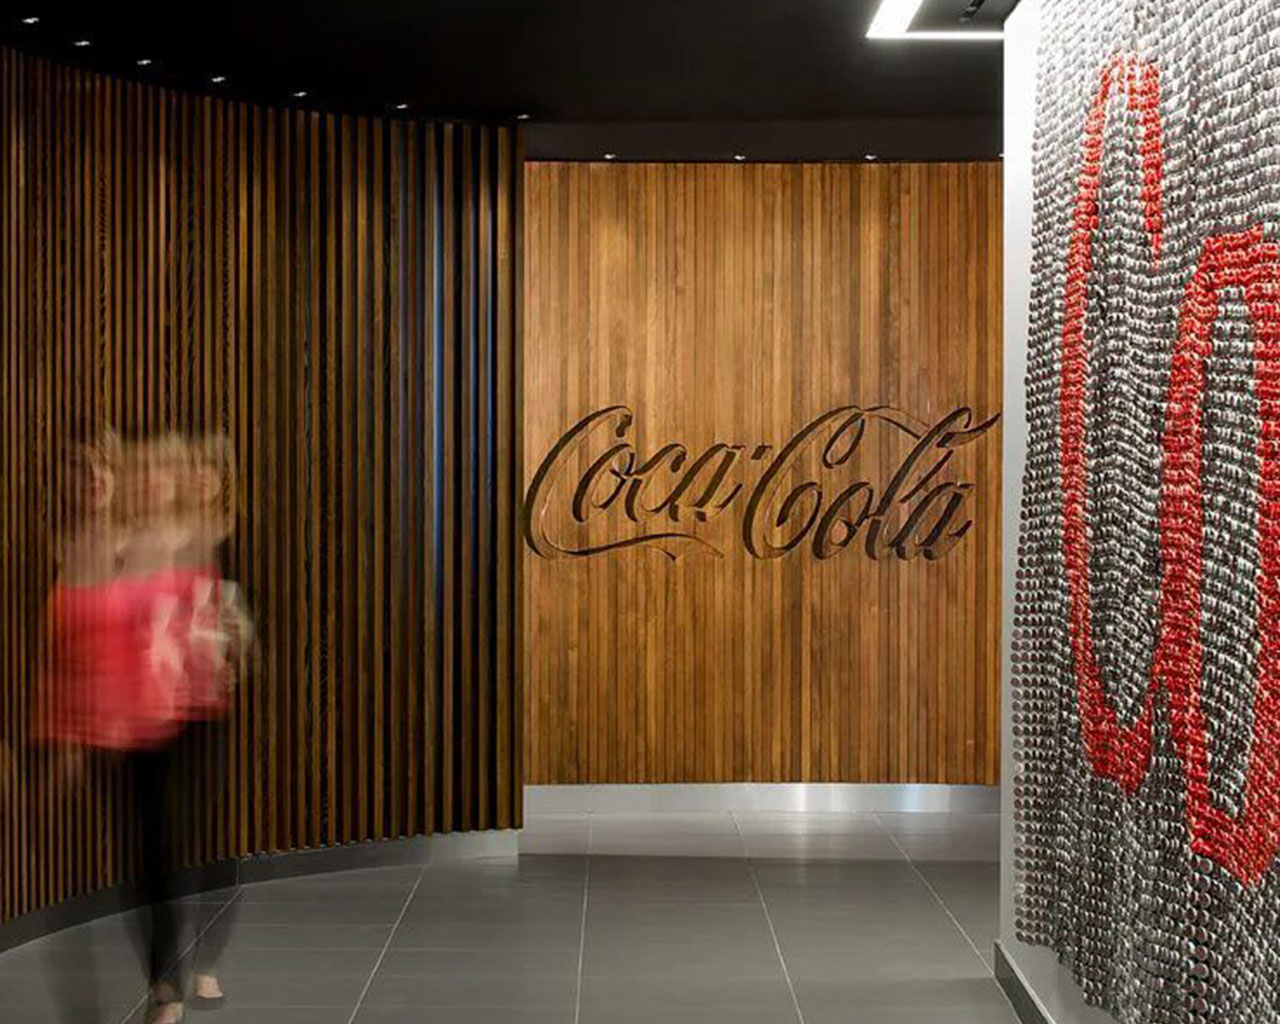 Mujer rubia caminando por una oficina de paredes de madera donde se observa el logo de Coca-Cola en la pared del fondo.